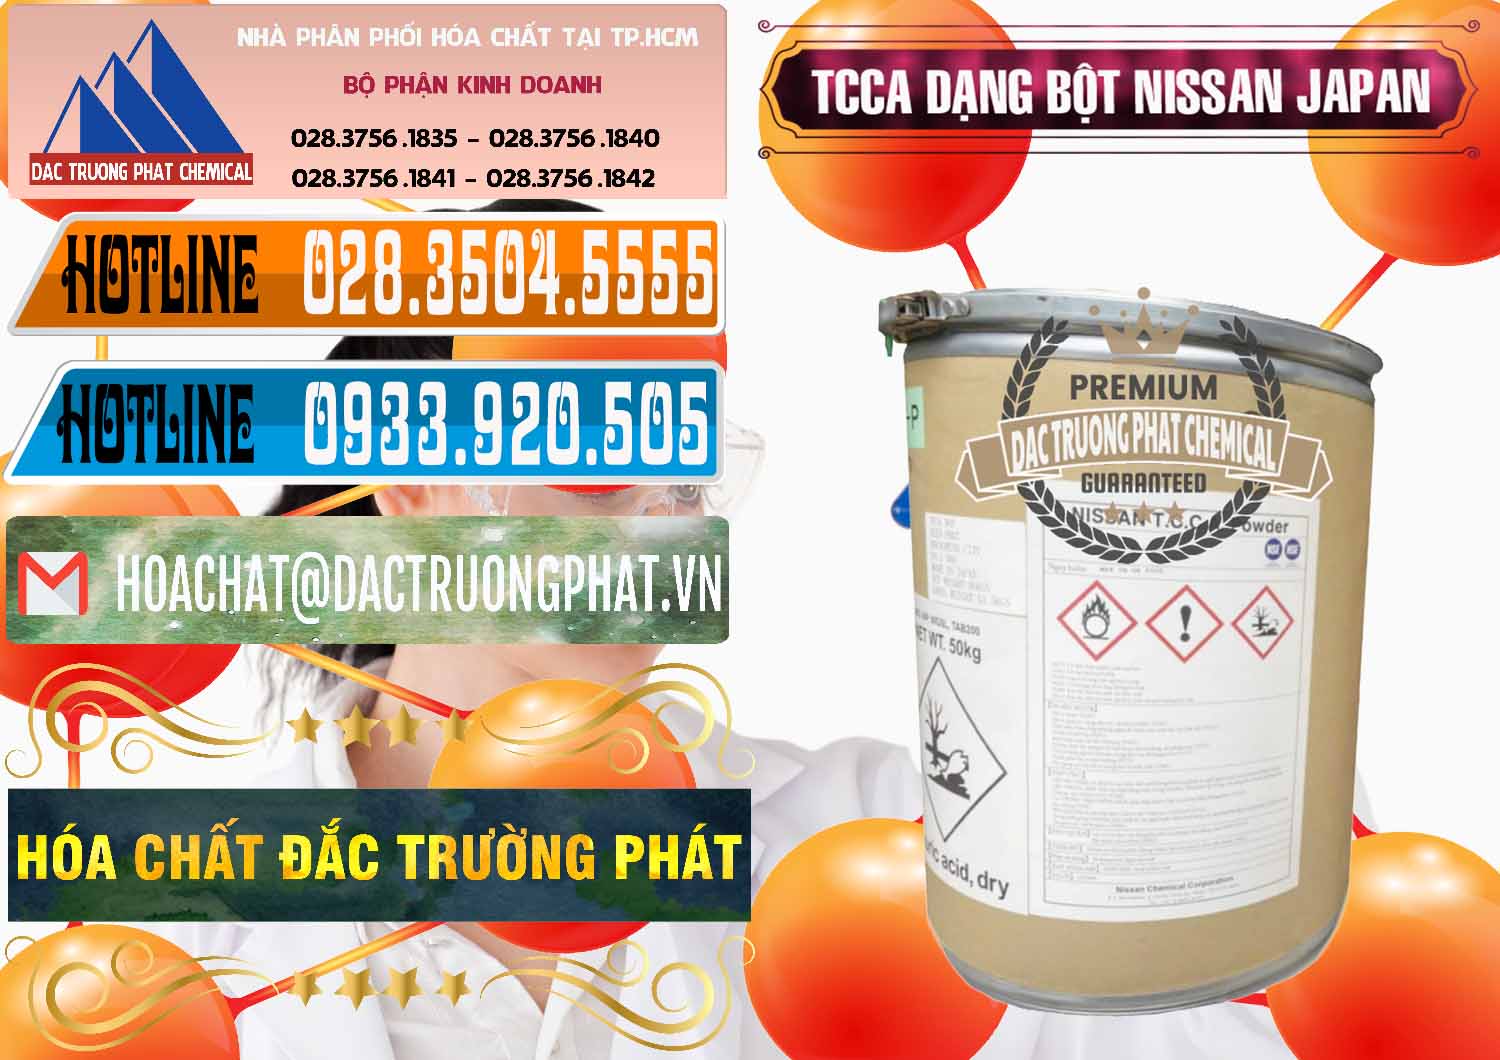 Chuyên bán và cung cấp TCCA - Acid Trichloroisocyanuric 90% Dạng Bột Nissan Nhật Bản Japan - 0375 - Công ty nhập khẩu & phân phối hóa chất tại TP.HCM - stmp.net